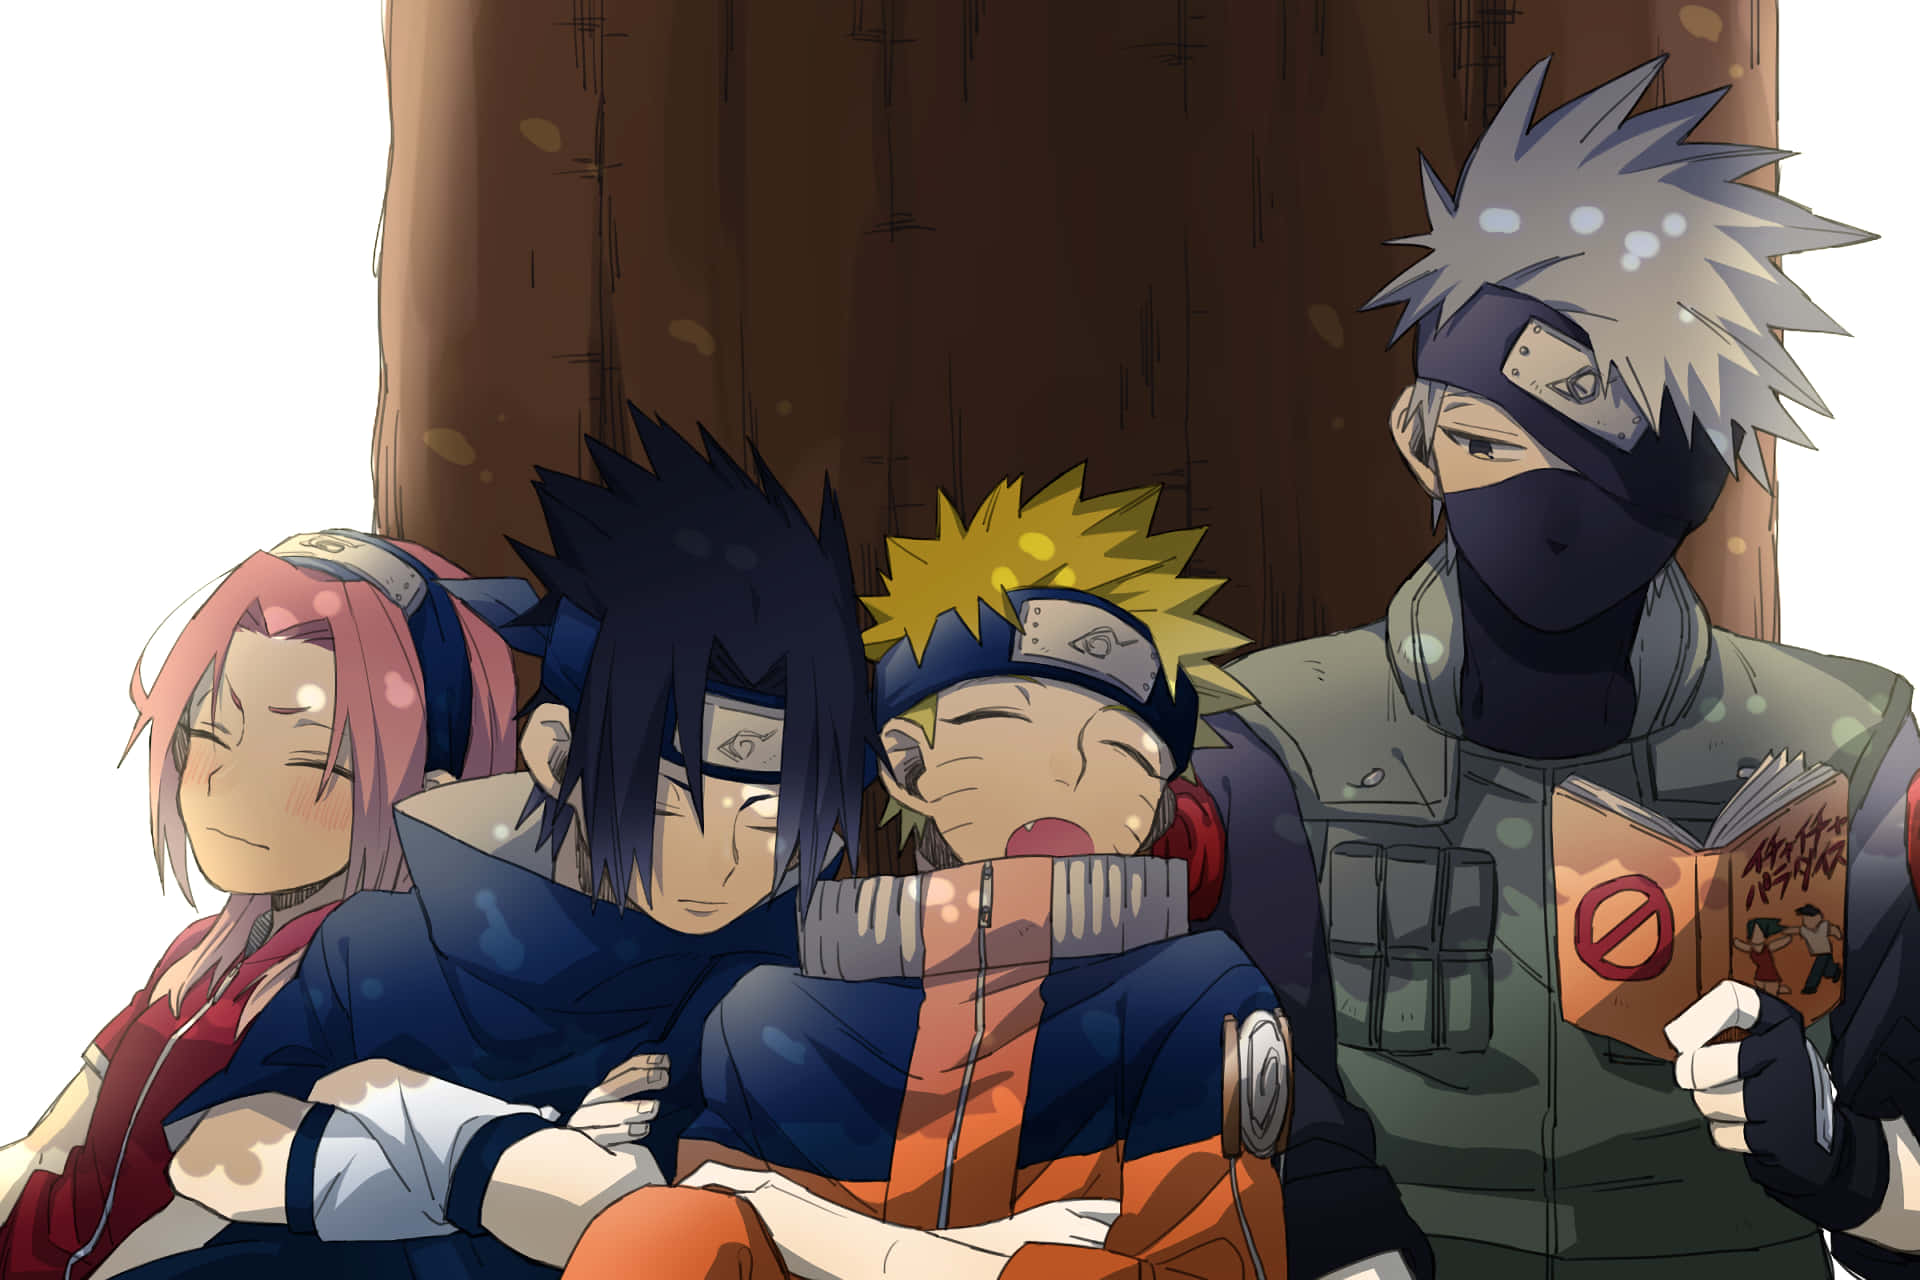 Einepisches Treffen Zwischen Drei Ikonischen Ninjas - Naruto, Sasuke Und Kakashi. Wallpaper